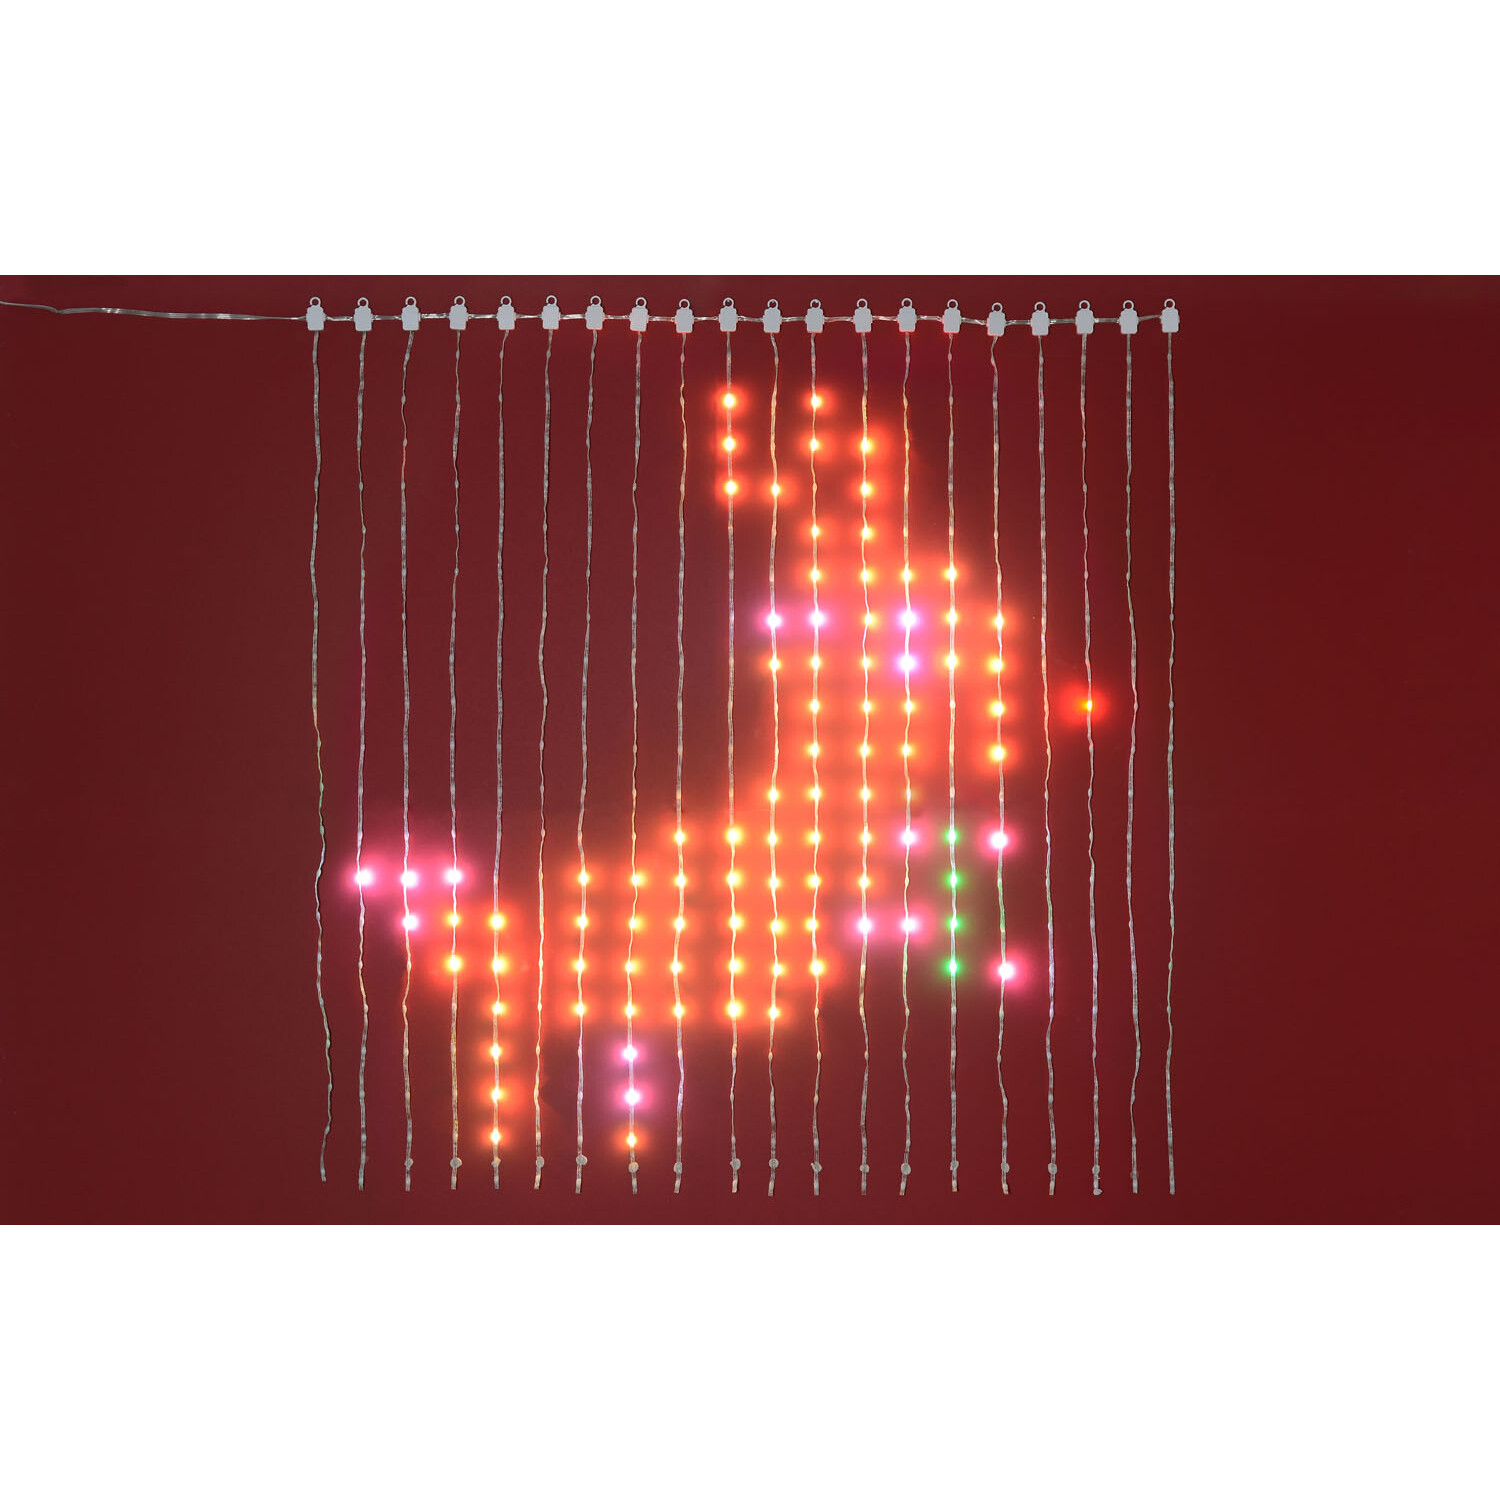 400 LED Programmable Christmas Lights Image 2